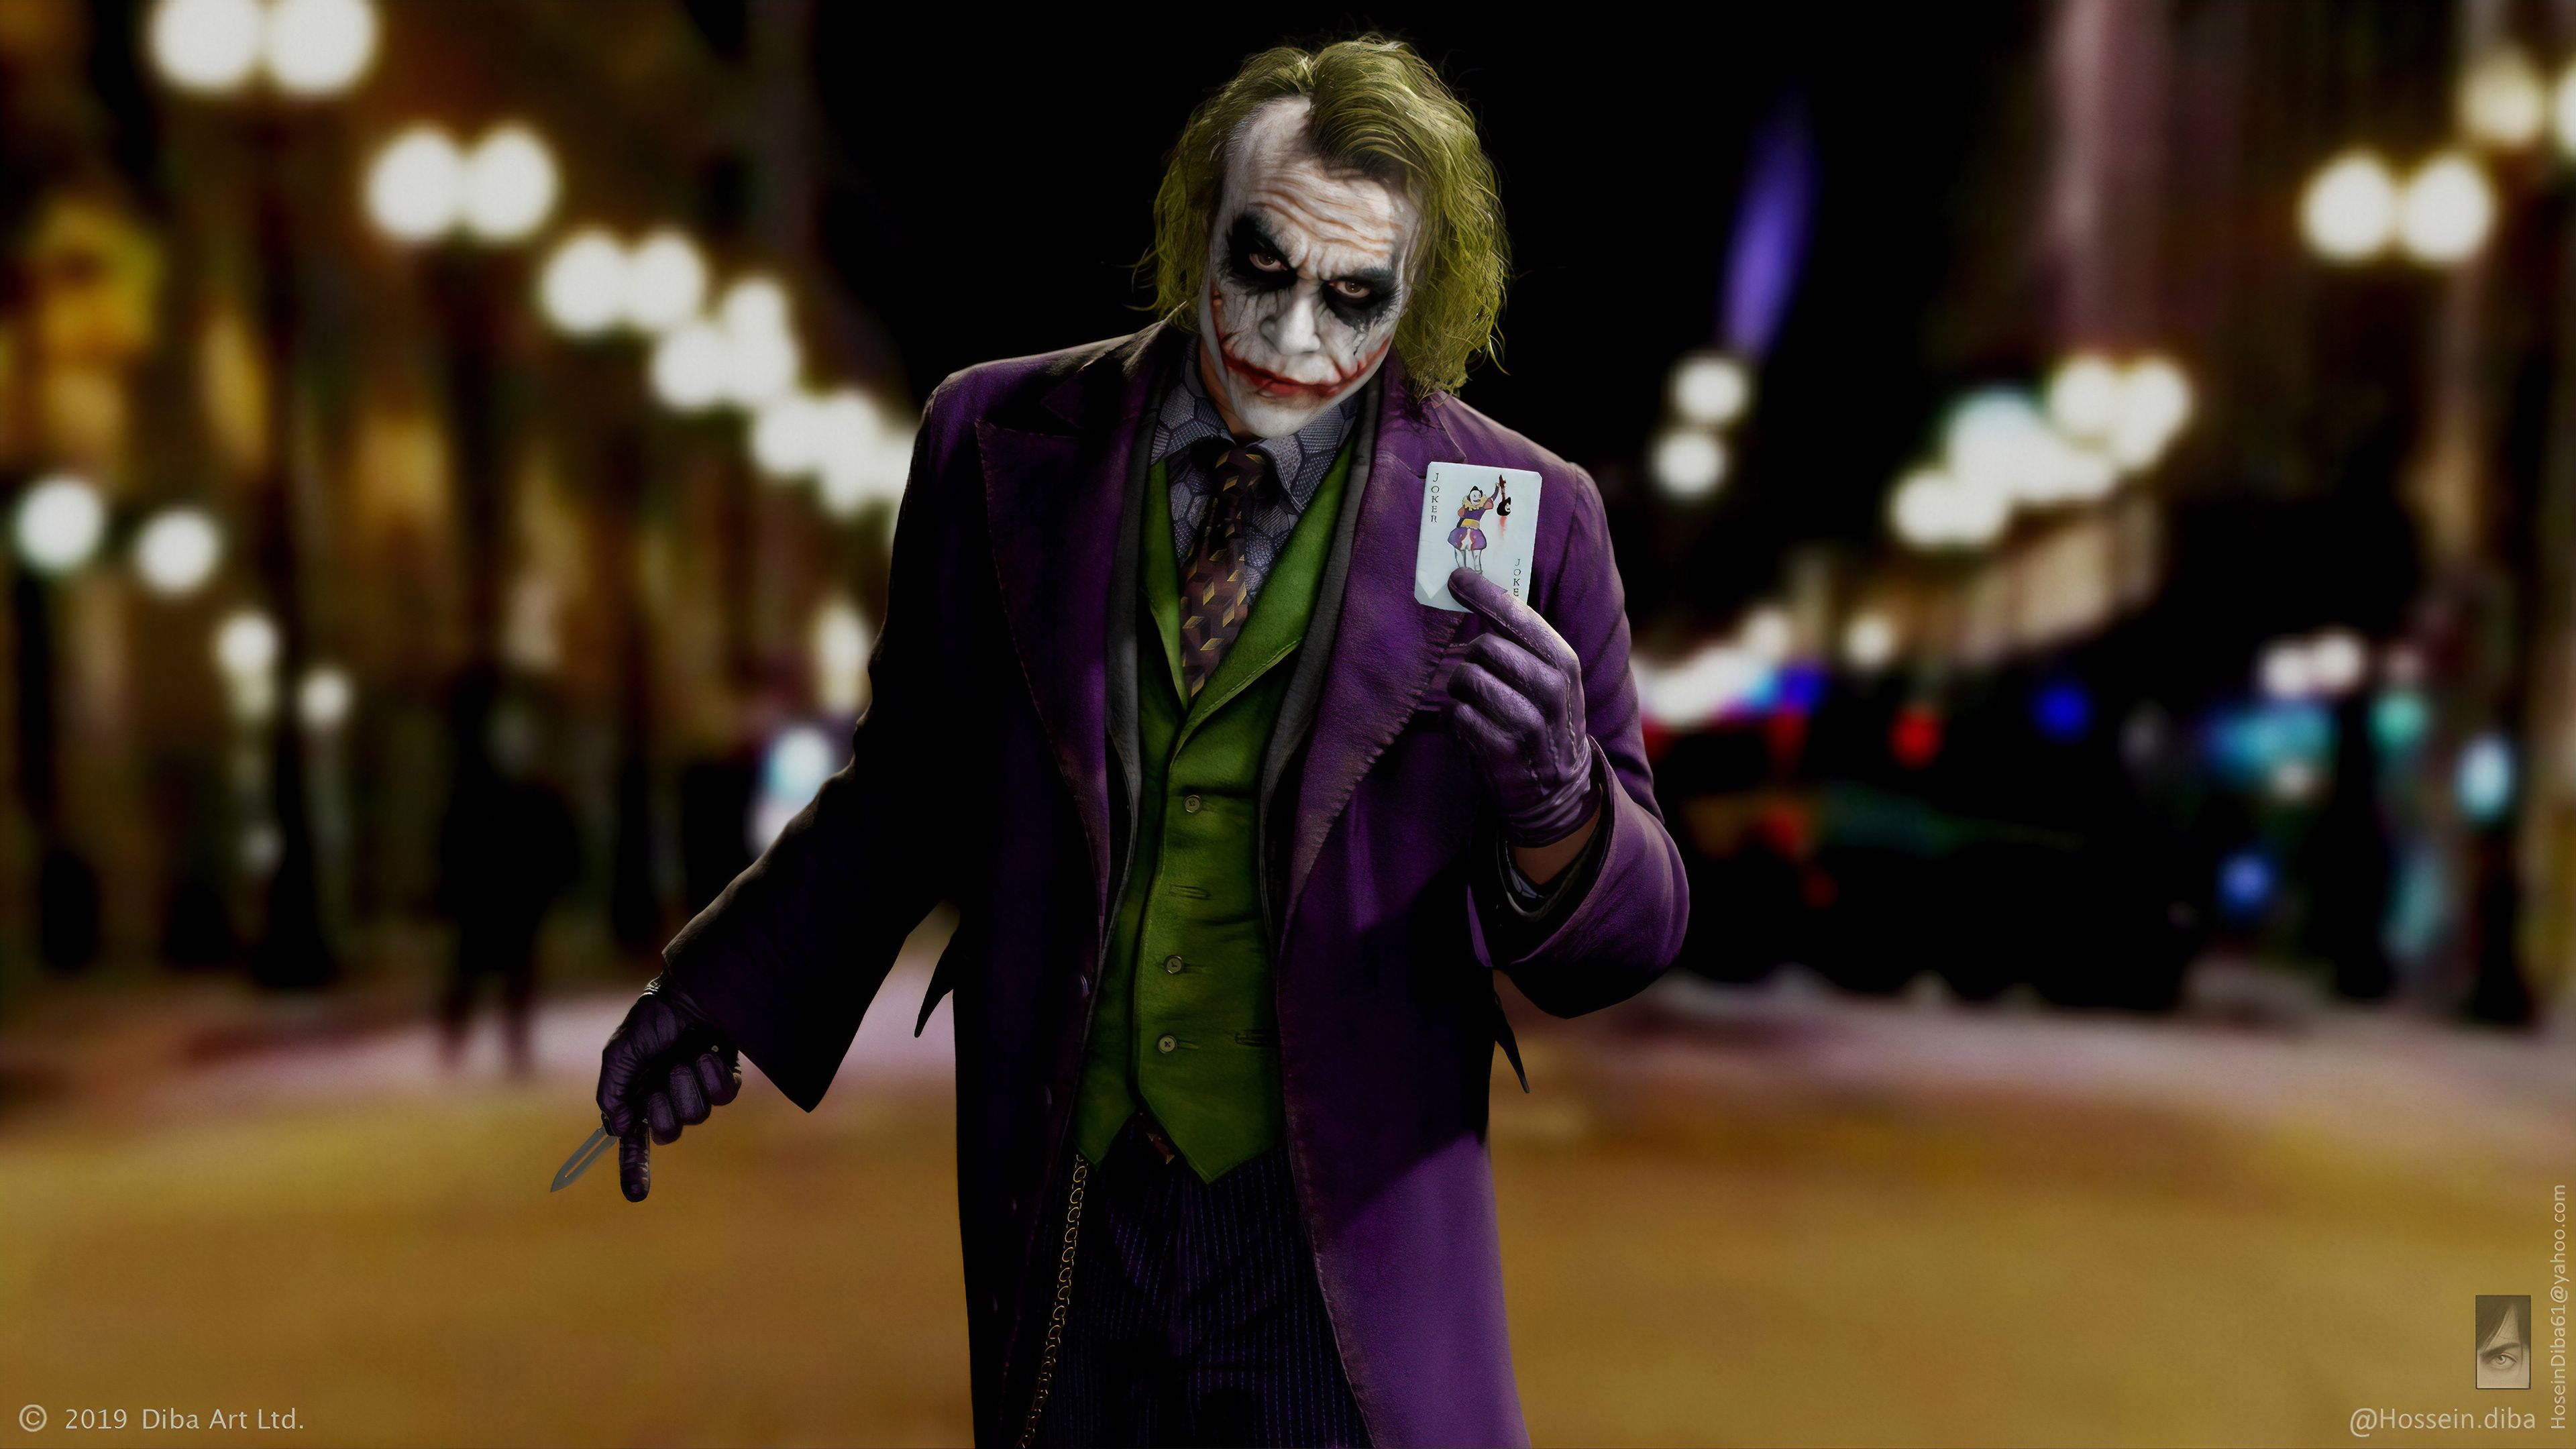 4K Wallpaper Joker, 925 Joker HD Wallpaper Background Image in gotham season 5